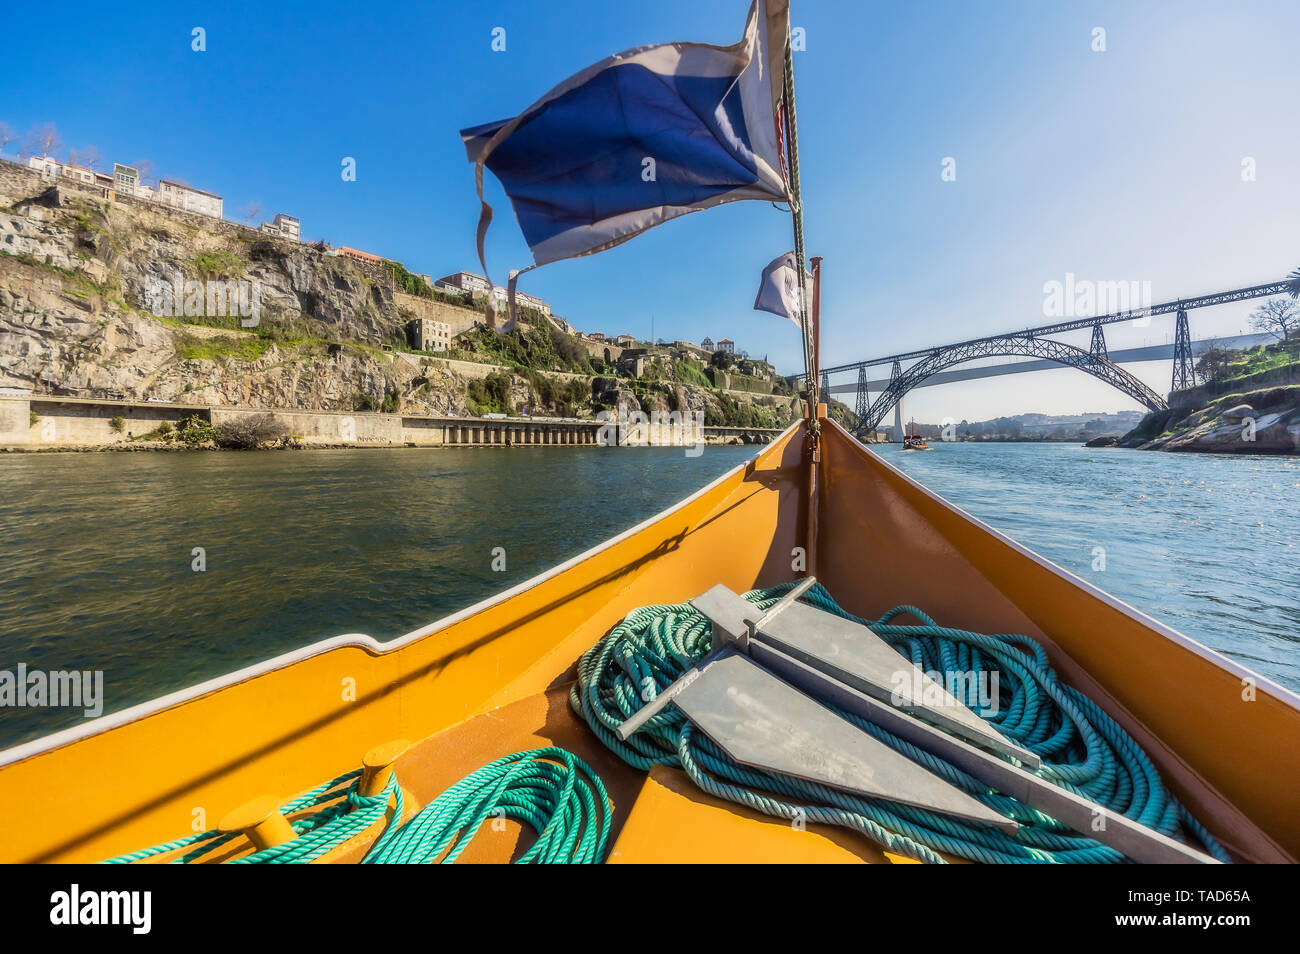 Portugal, Porto, Douro river, pleasure boat and Luiz I Bridge in the background Stock Photo